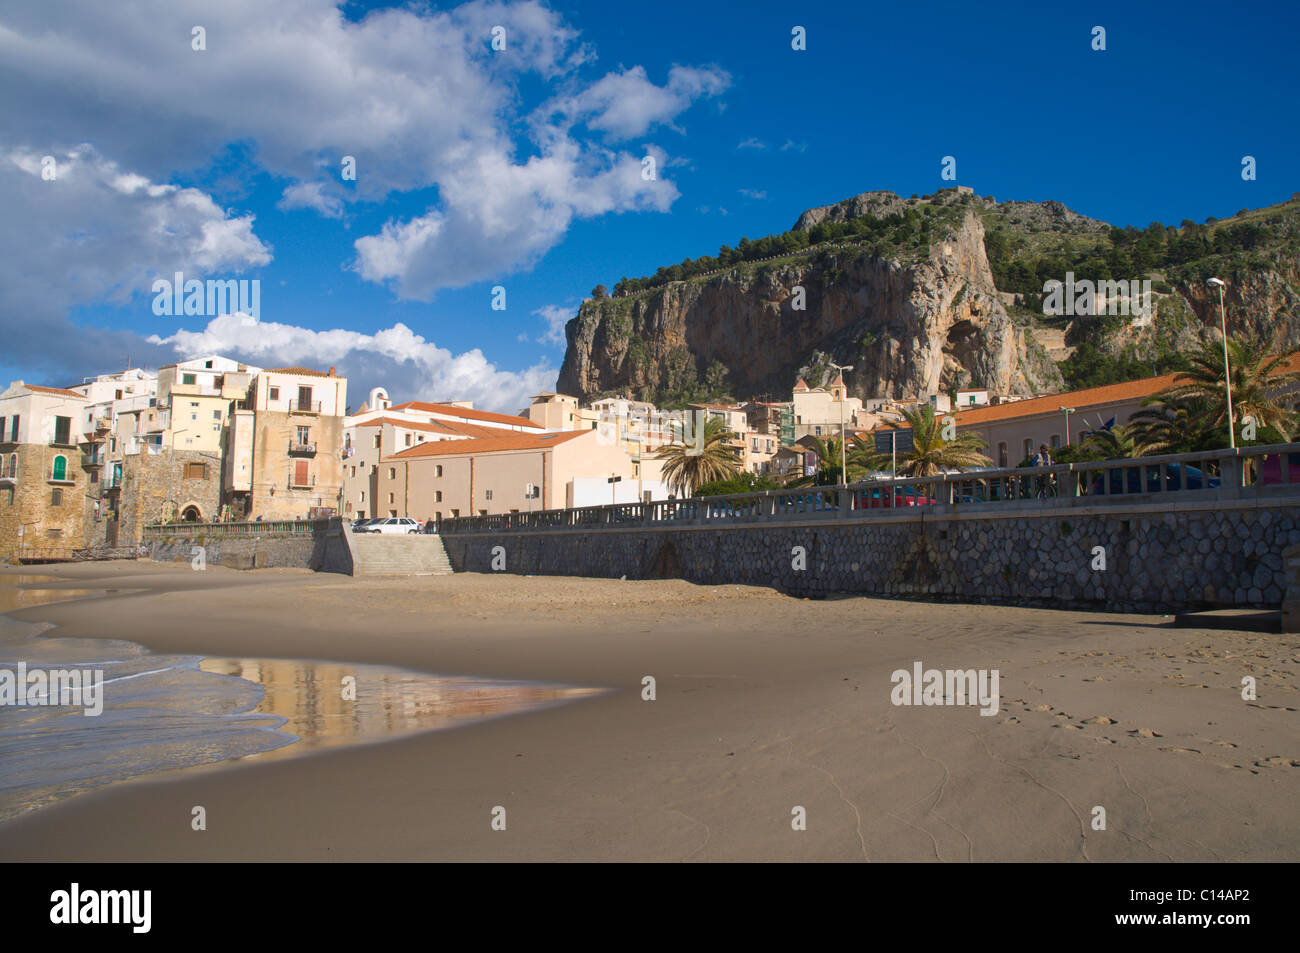 Plage de la ville de Cefalù avec La Rocca montagne en arrière-plan côte Tyrrhénienne Sicilia Italie Europe Banque D'Images